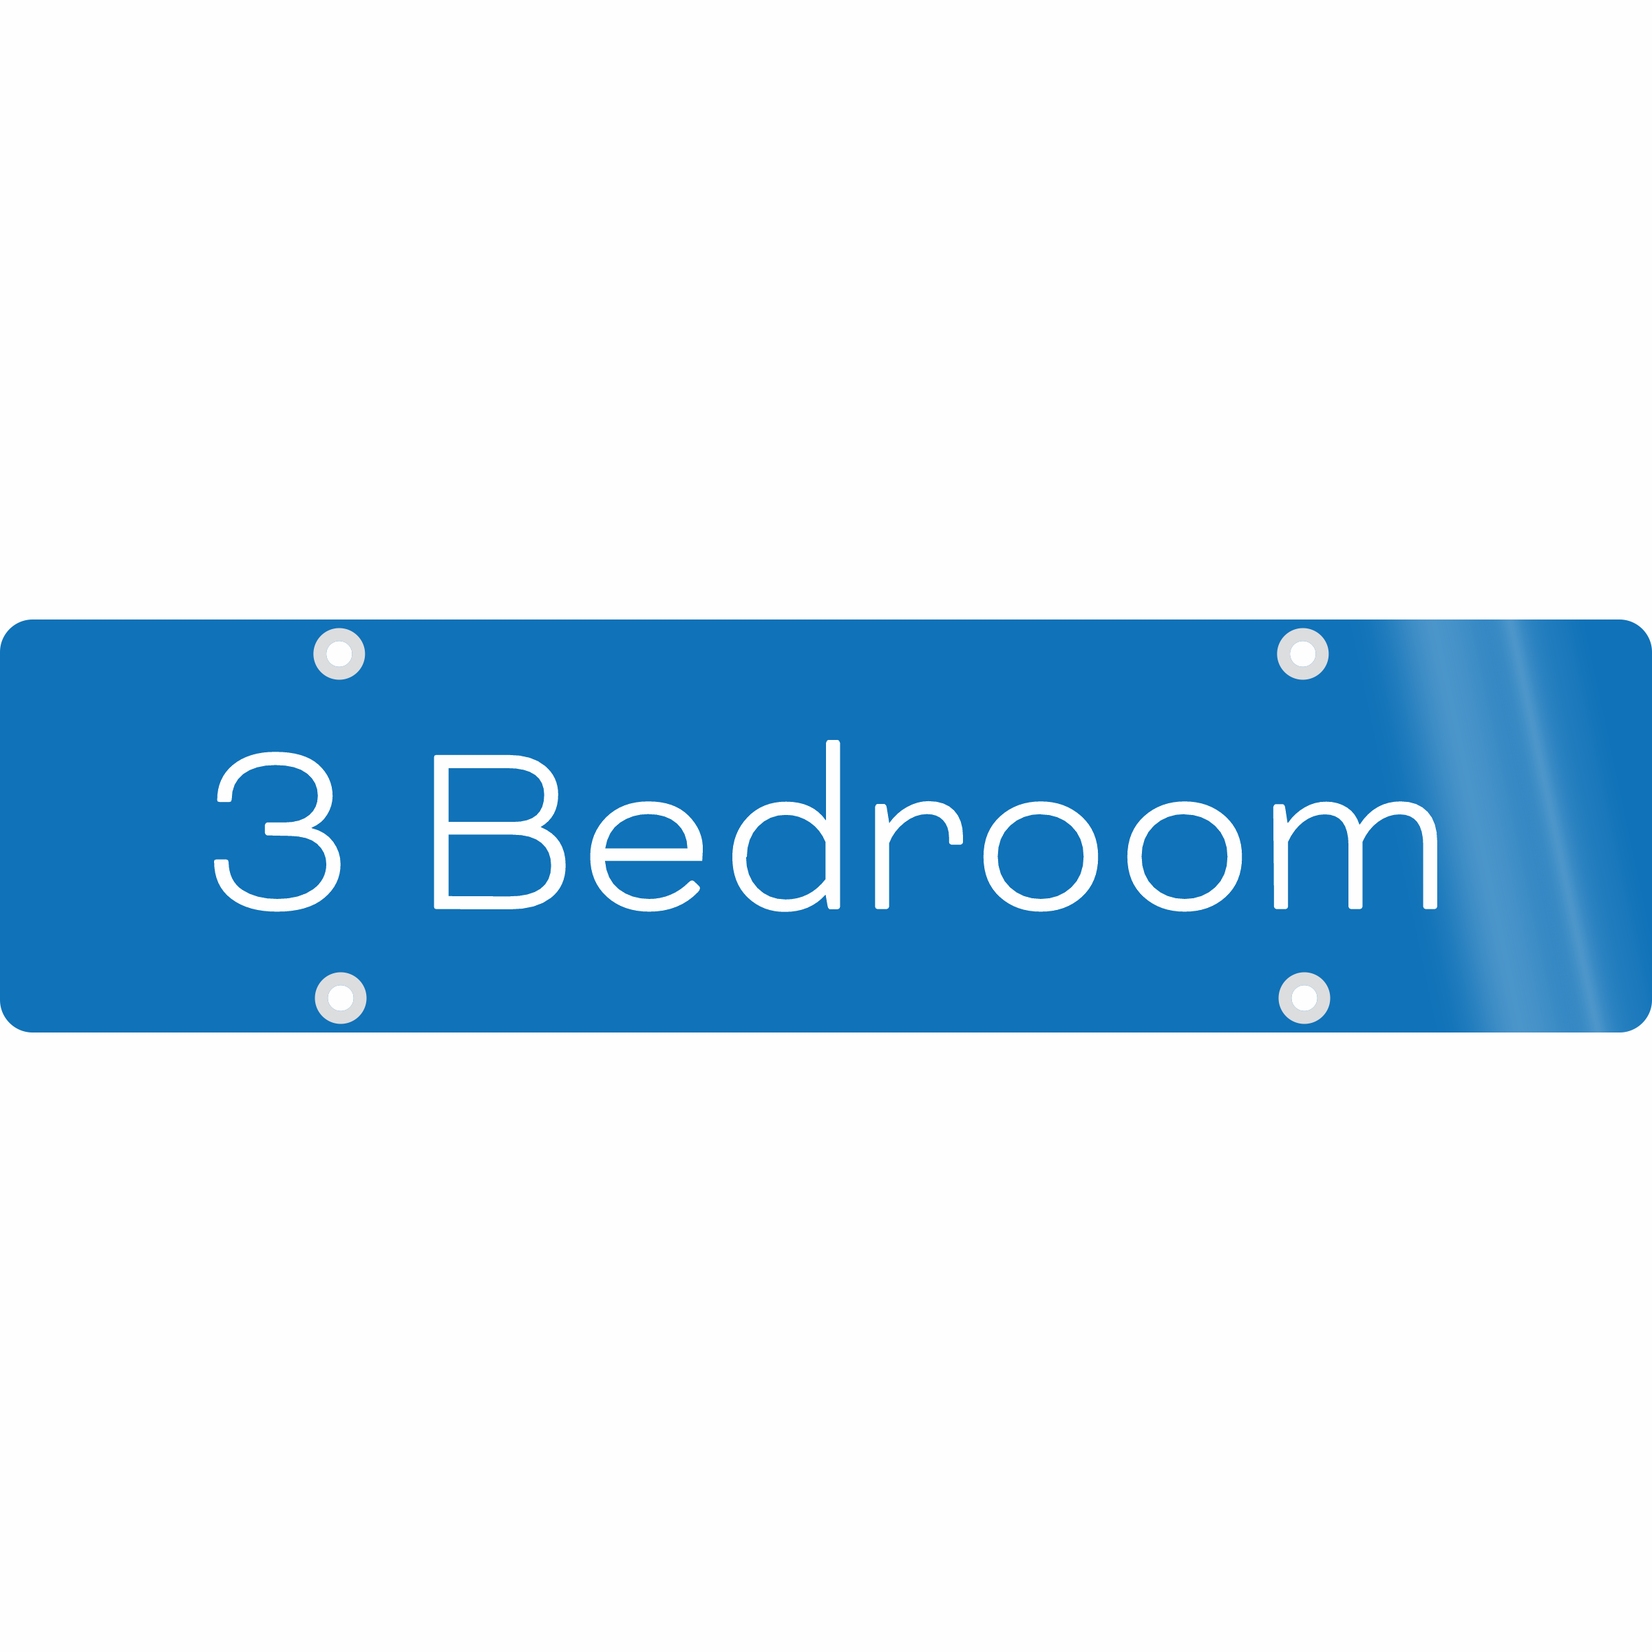 24" x 6" - 3 Bedroom